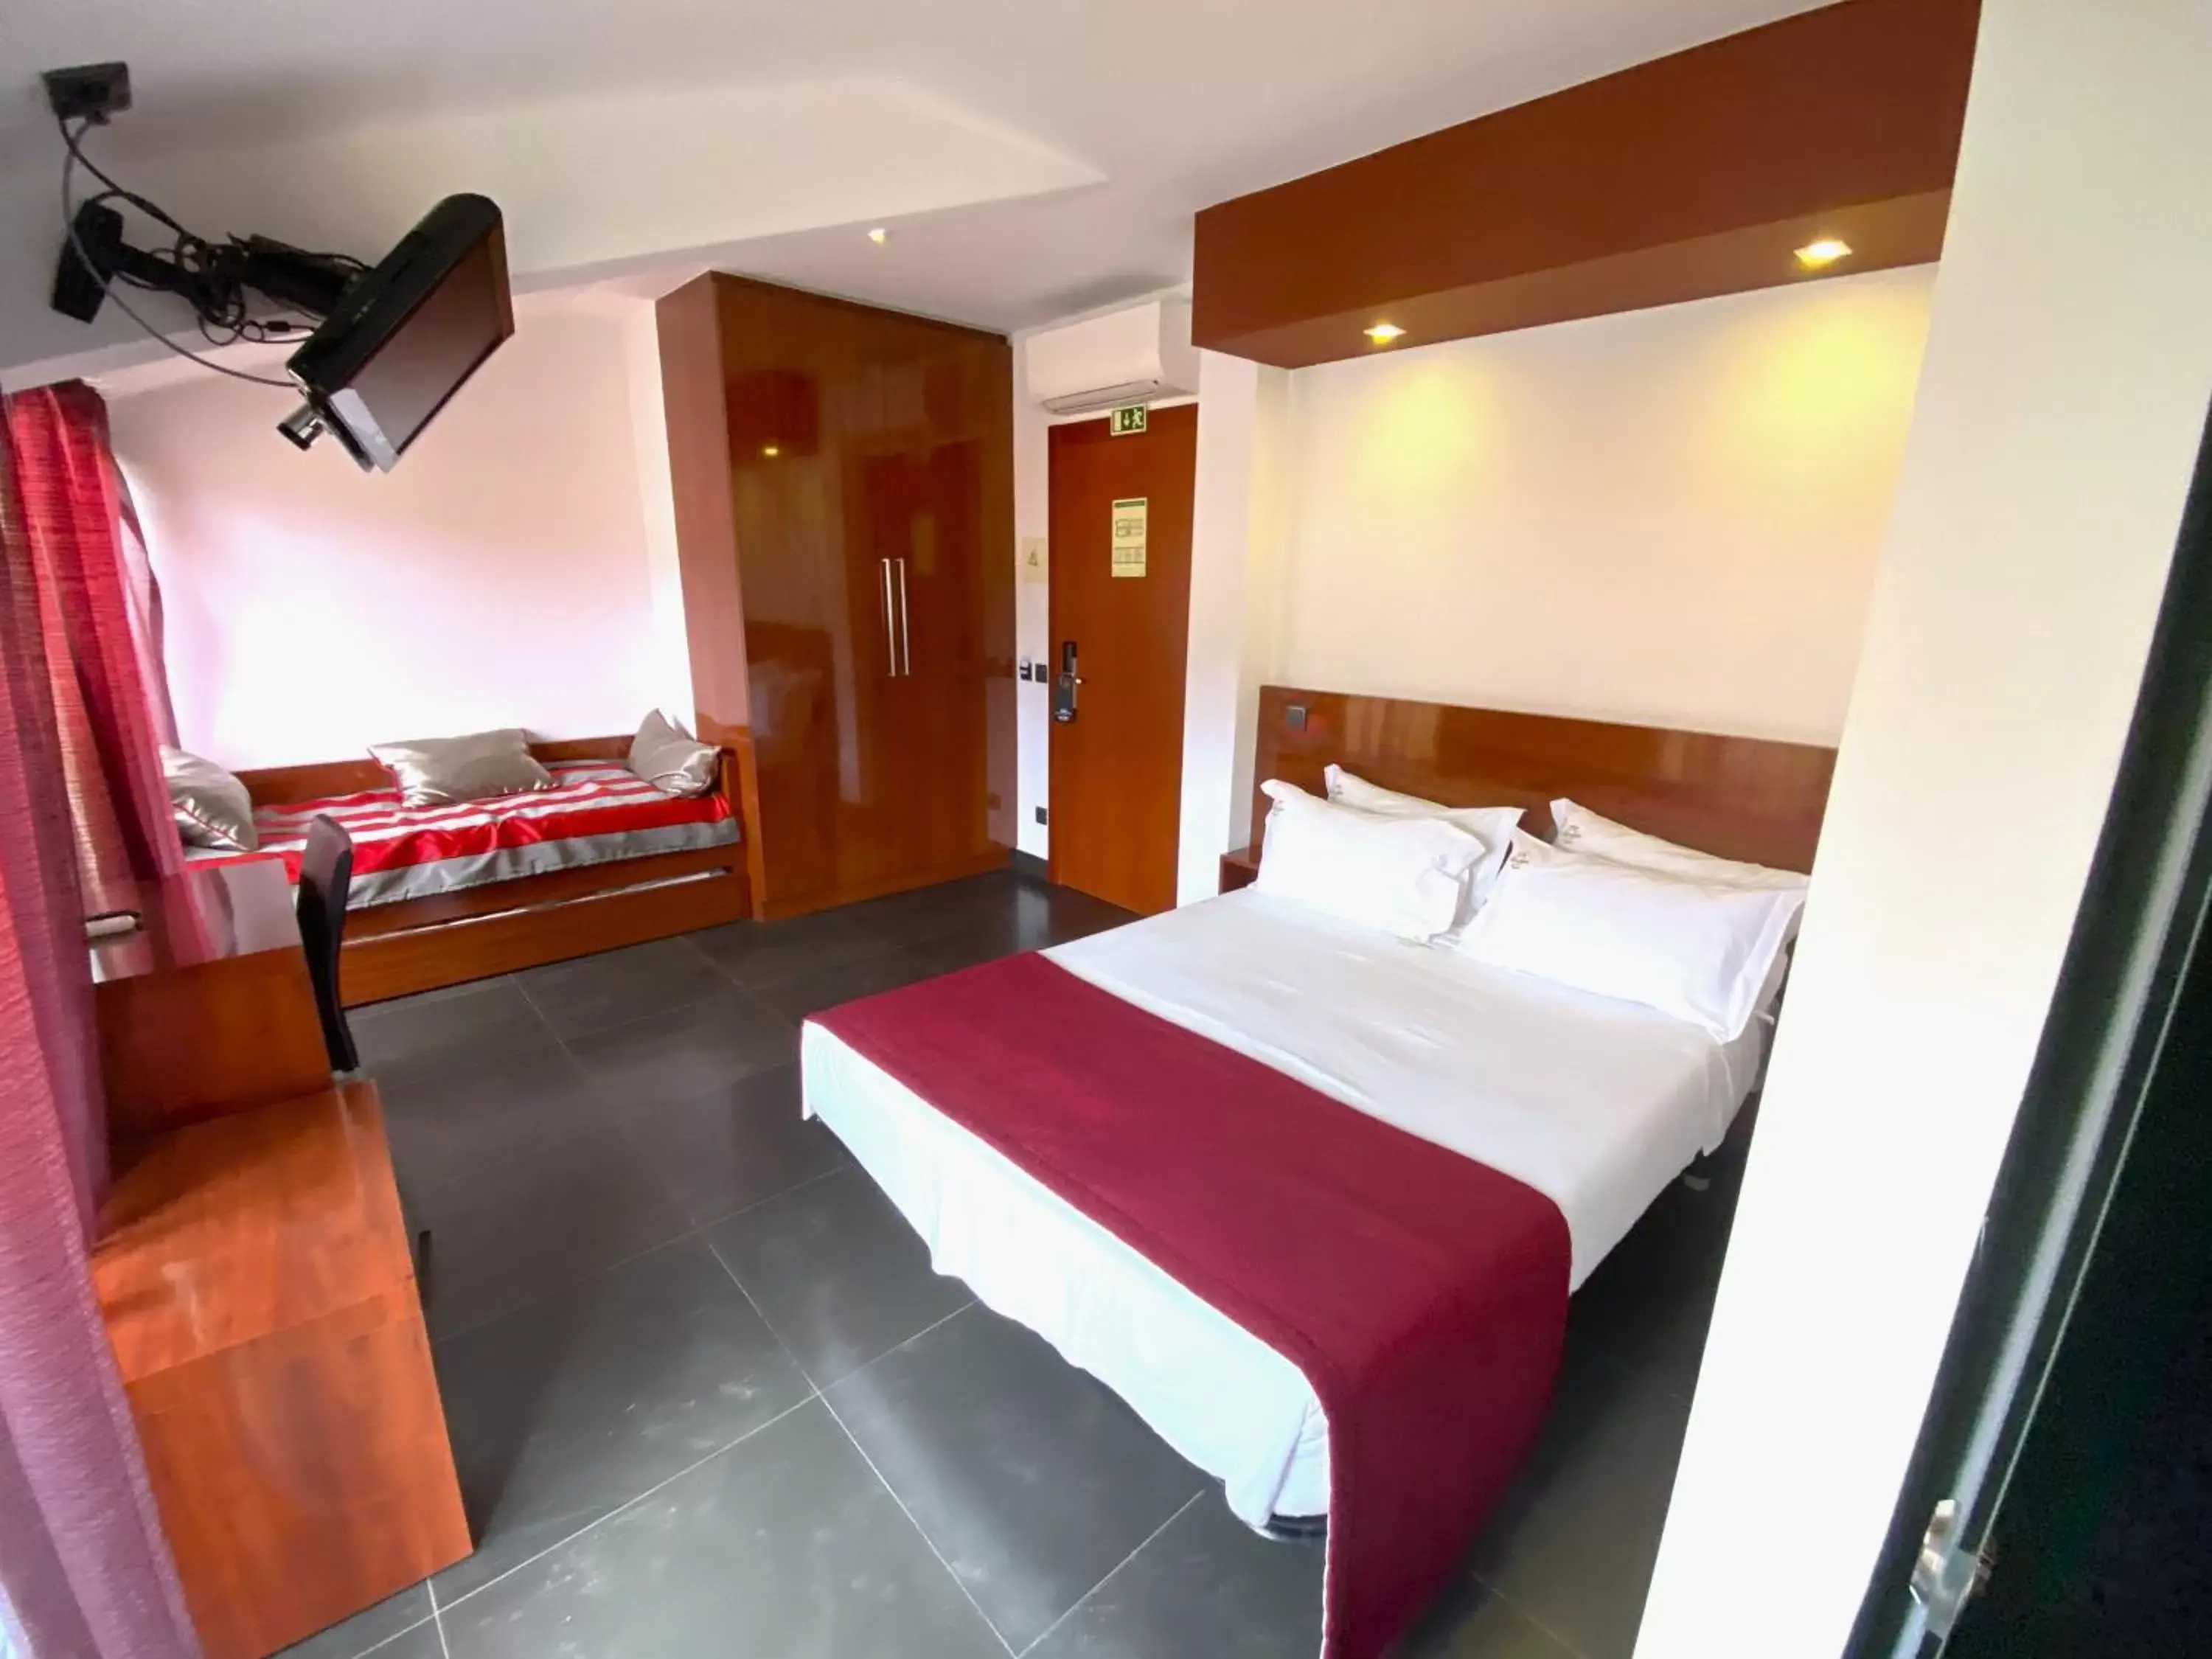 Bedroom in Hotel Oceano